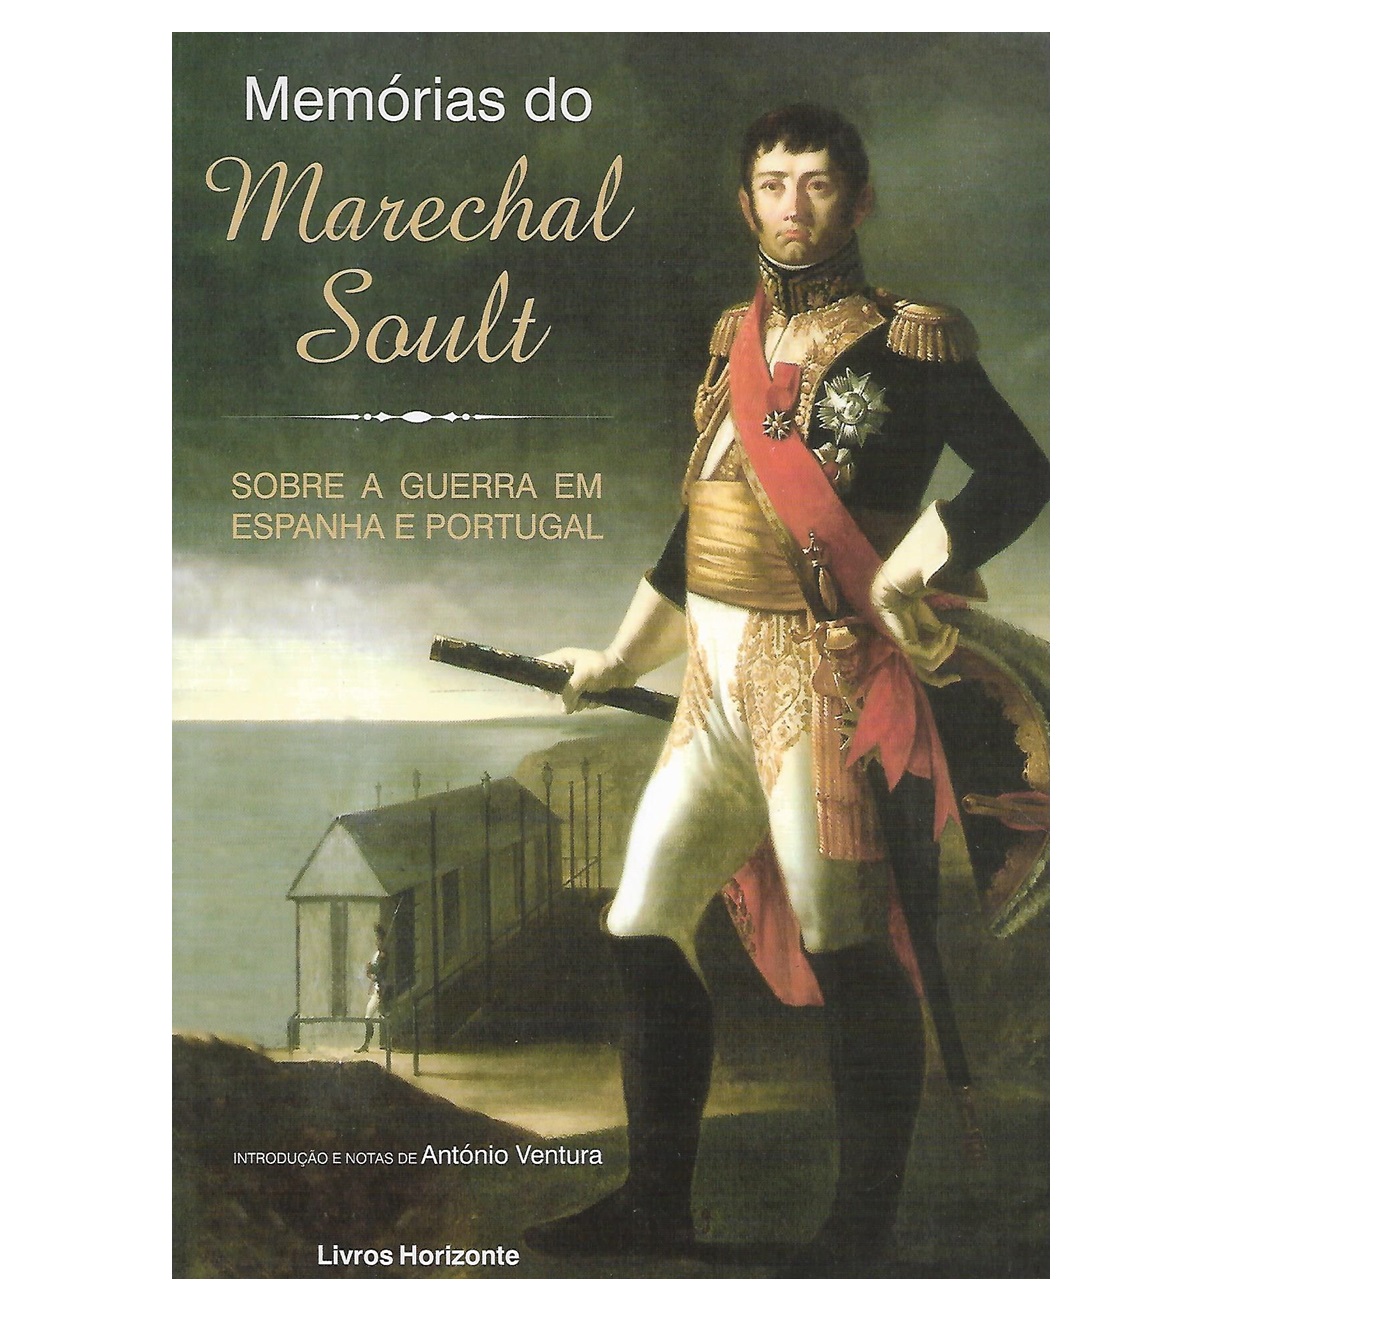 MEMÓRIAS DO MARECHAL SOULT. Sobre a Guerra em Portugal. 